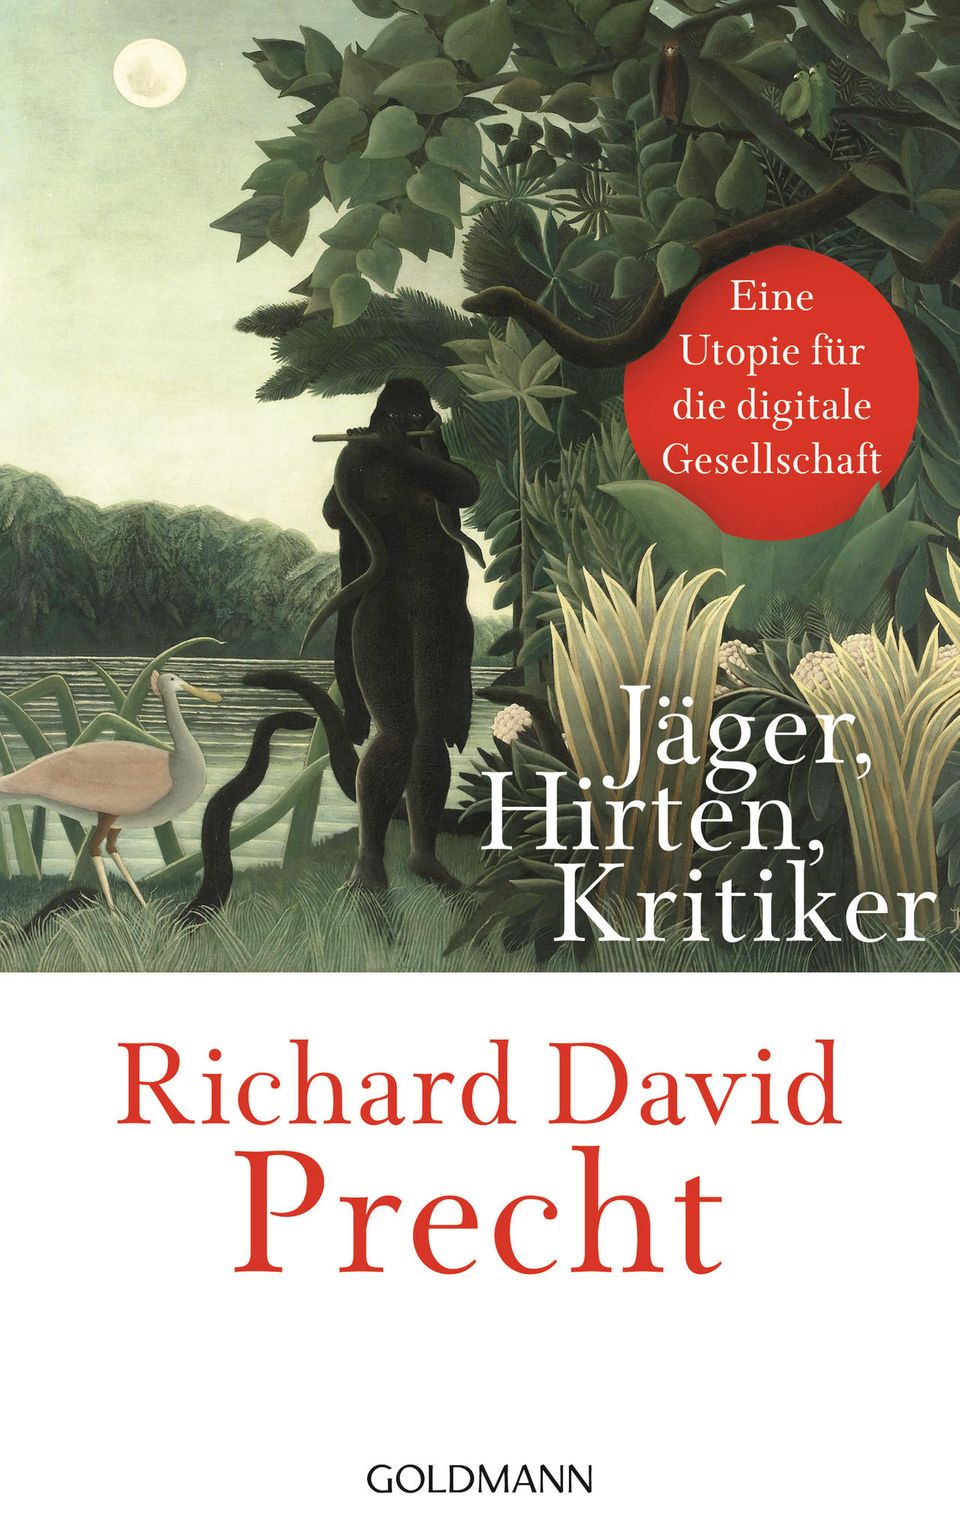 Das Buch von Richard David Precht "Jäger, Hirten, Kritiker - Utopie einer digitalen Gesellschaft" ist bei Audible als Hörbuch erhältlich. 